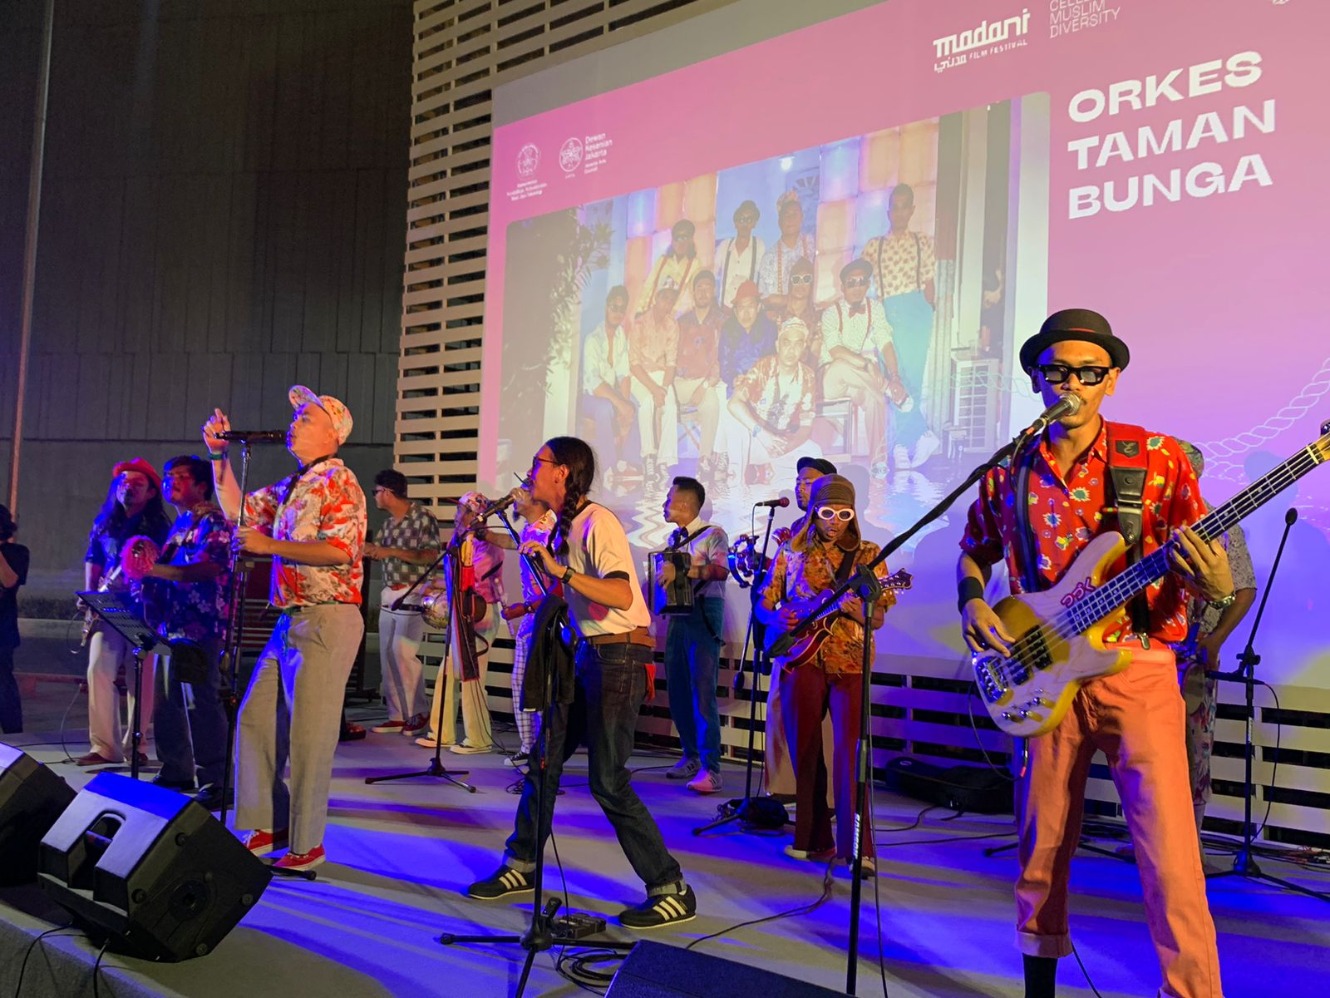 Grup Orkes Taman Bunga saat tampil di acara Madani International Film Festival 2023 di Taman Ismail Marzuki (TIM) Cikini Jakarta. (Sumber gambar: Hypeabis.id/Luke Andaresta)